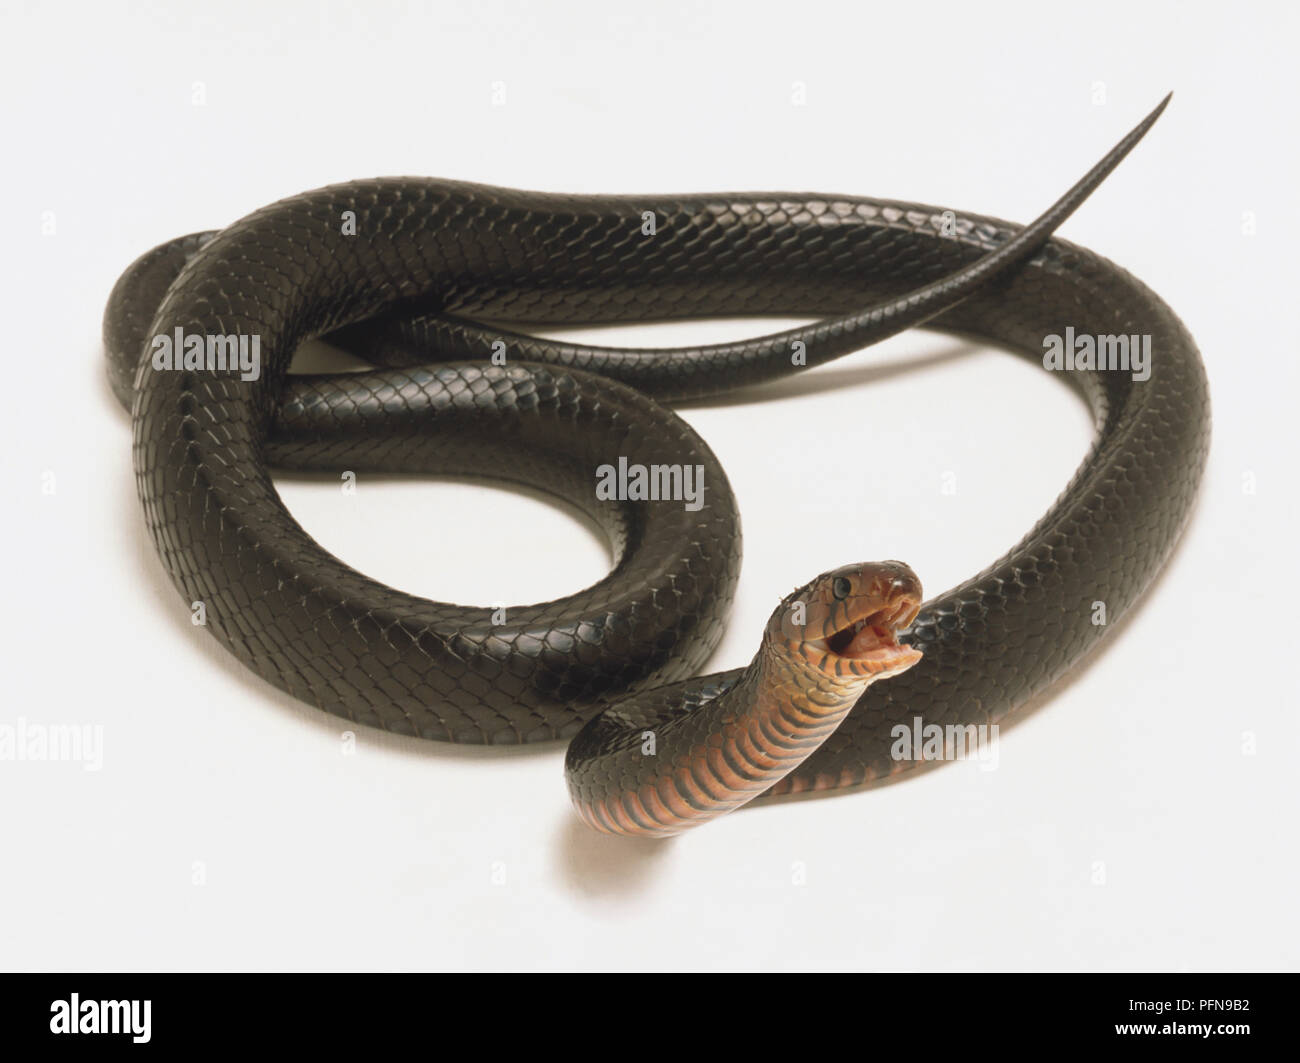 Ansicht einer Indigo Schlange mit einem Jet schwarzen Körper und einem tiefen Rot Kinn. Der Kopf ist deutlich sichtbar und der Mund ist geöffnet. Stockfoto